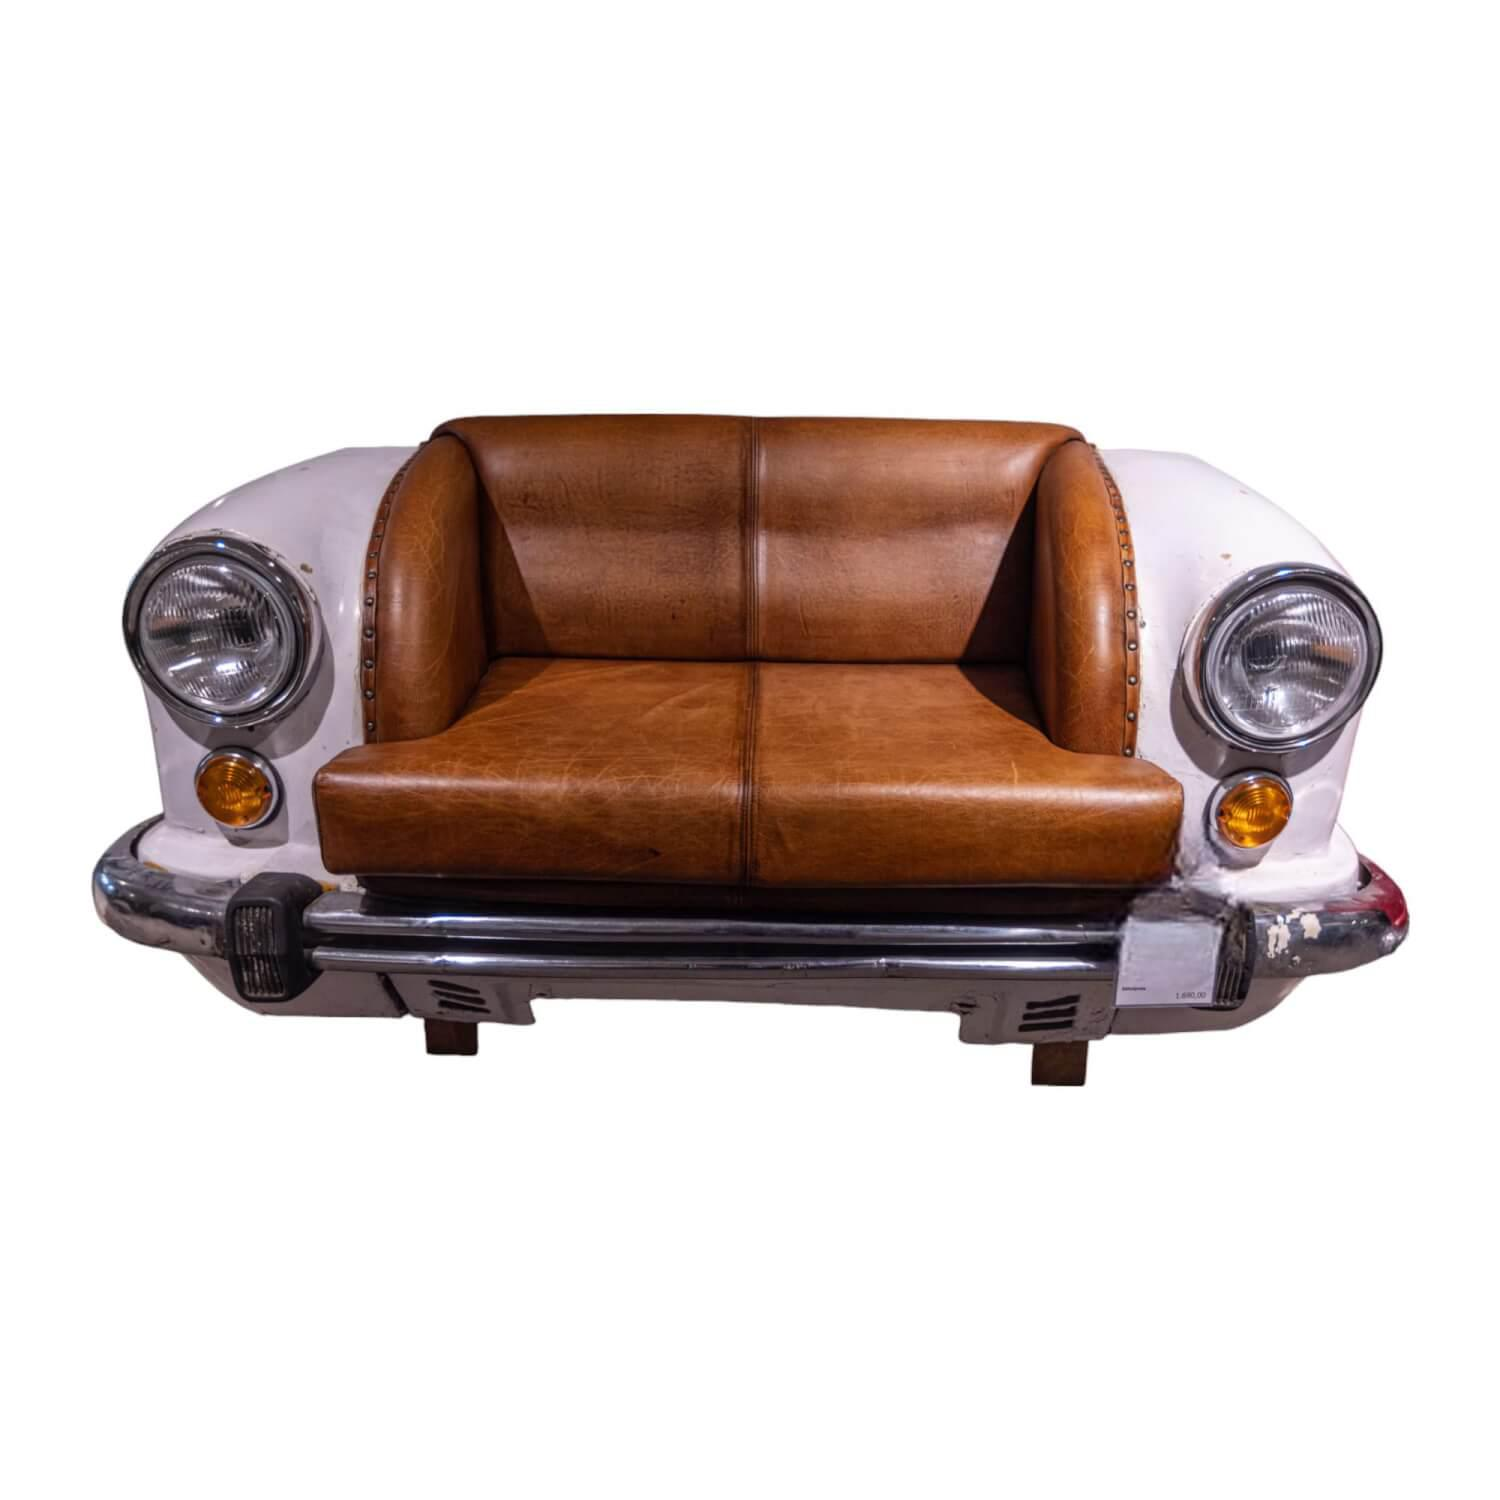 Sofa 21688 Autoform Ambassador mit Scheinwerfern Leder/Metall weiß braun-rot Vintage